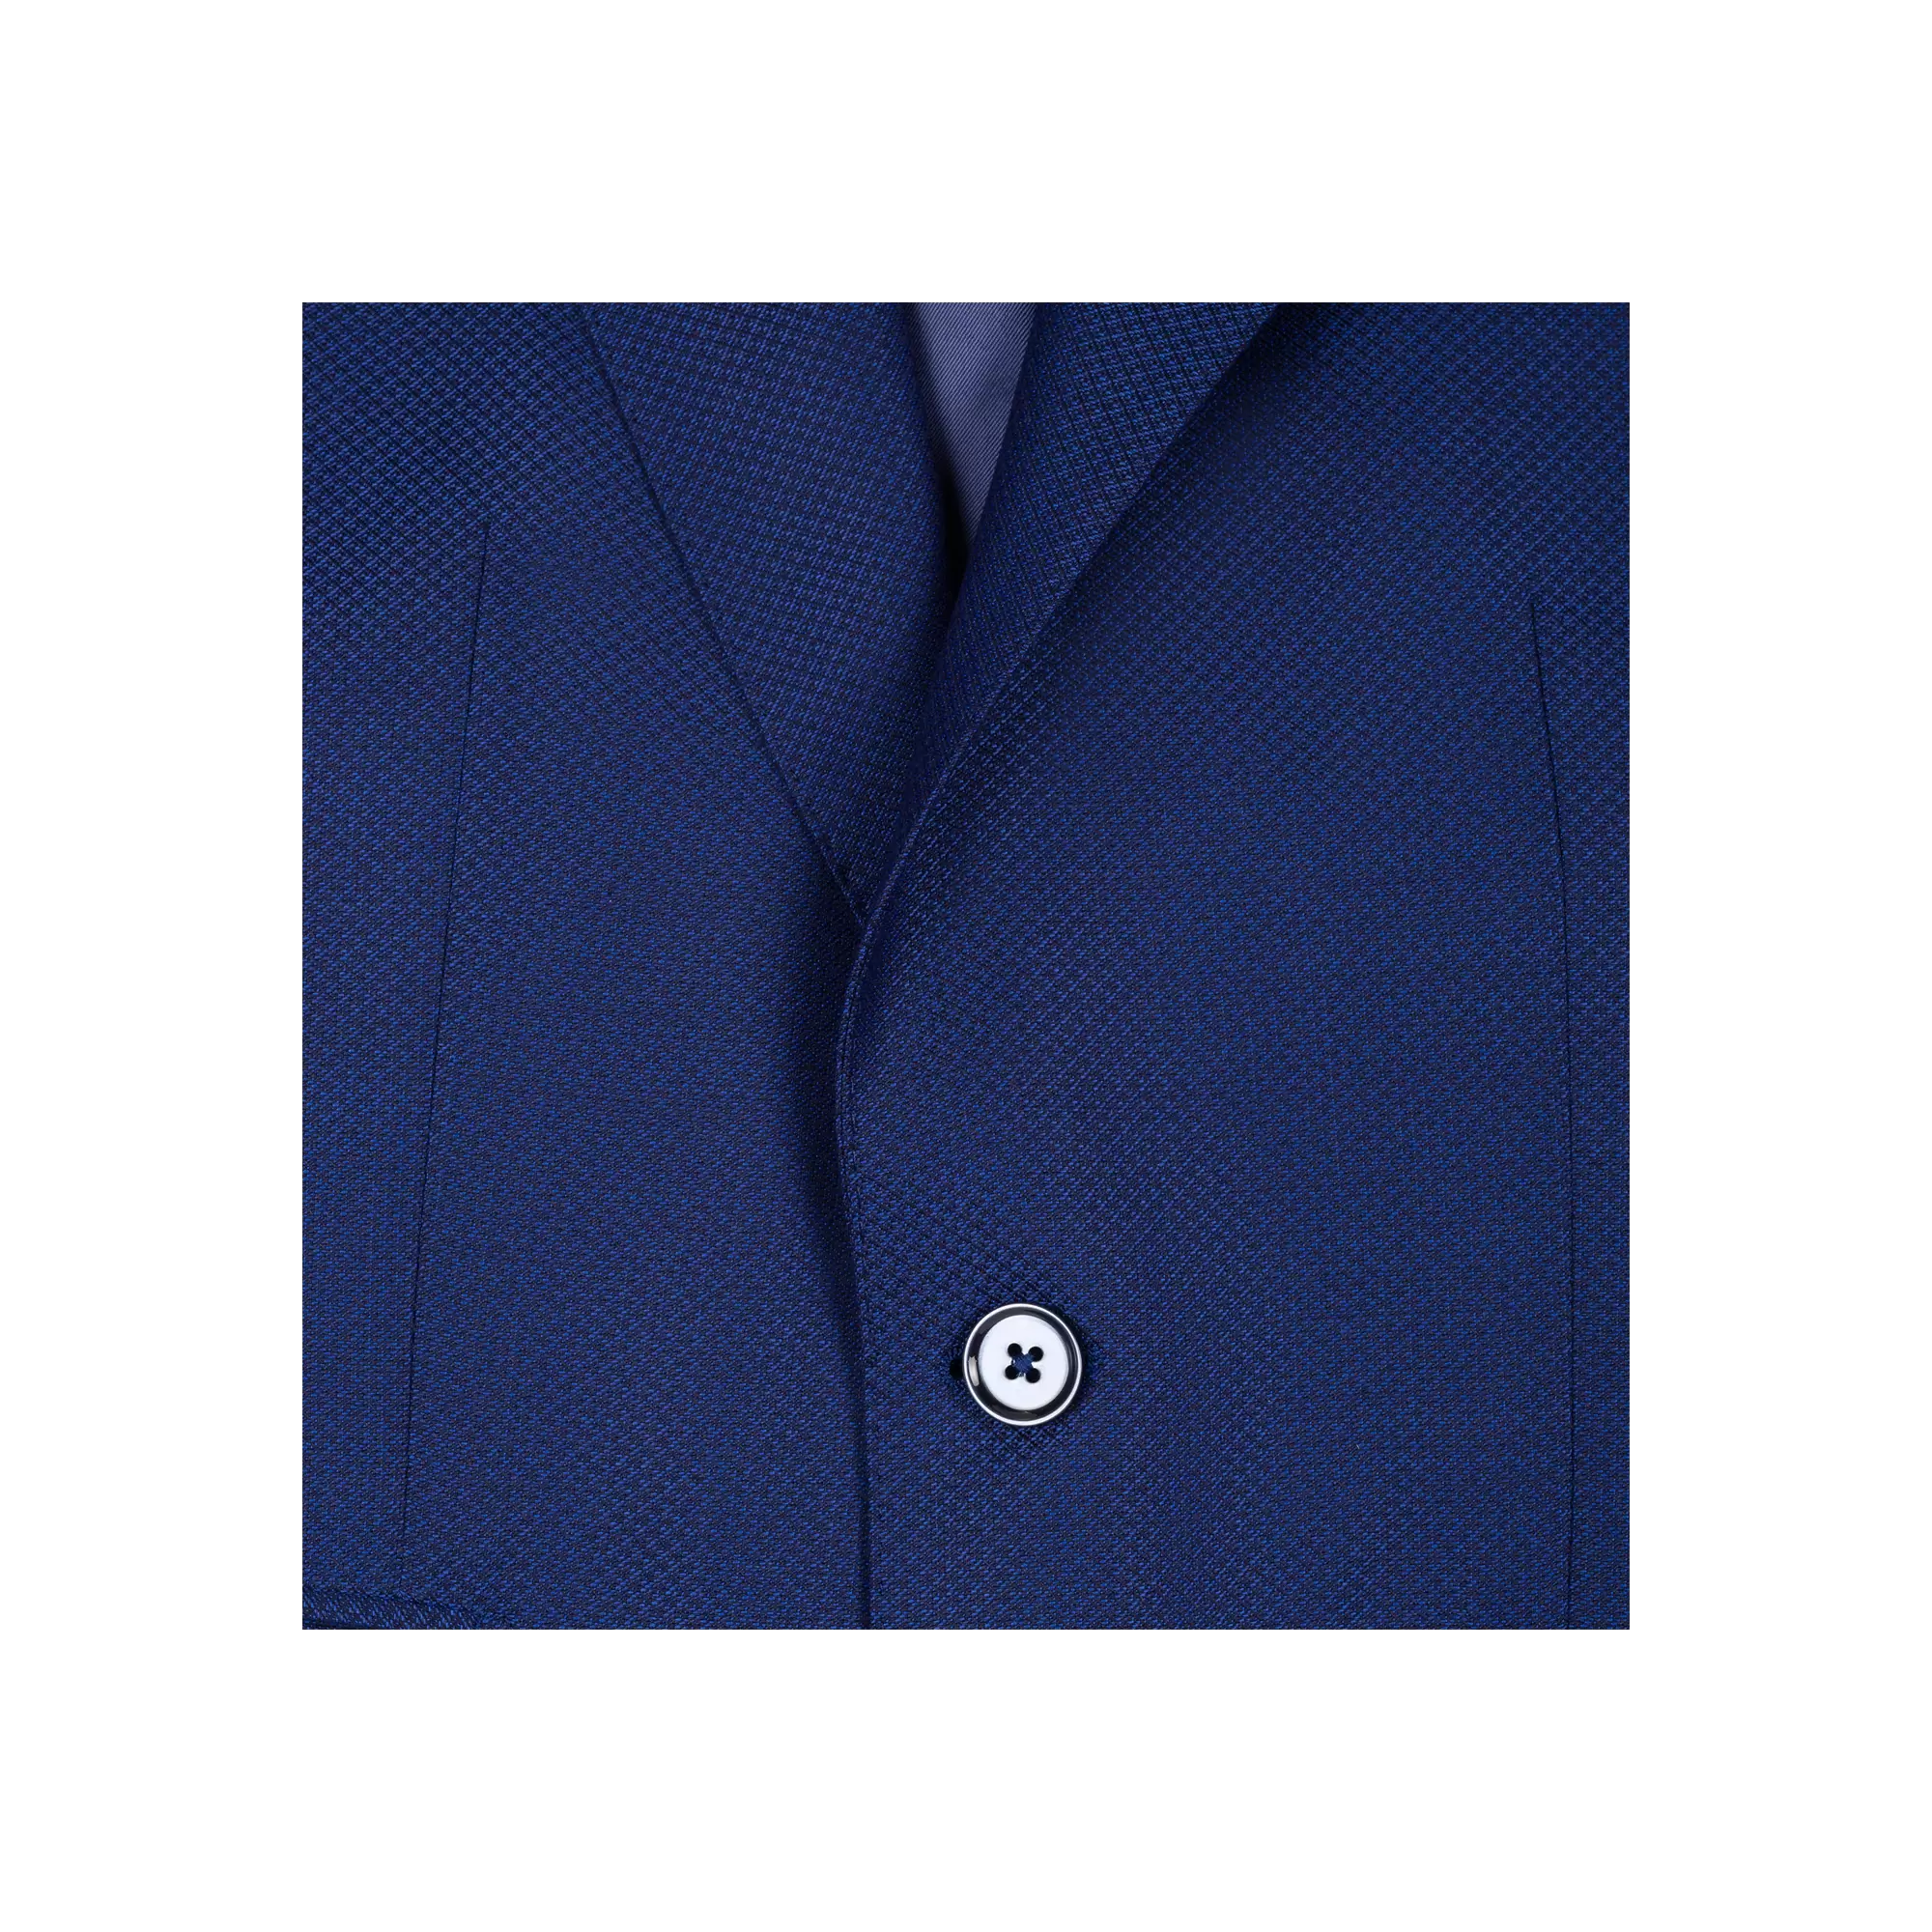 Ανδρικό Κοστούμι Με Γιλέκο Ρουά Μπλε Tailor Italian Wear